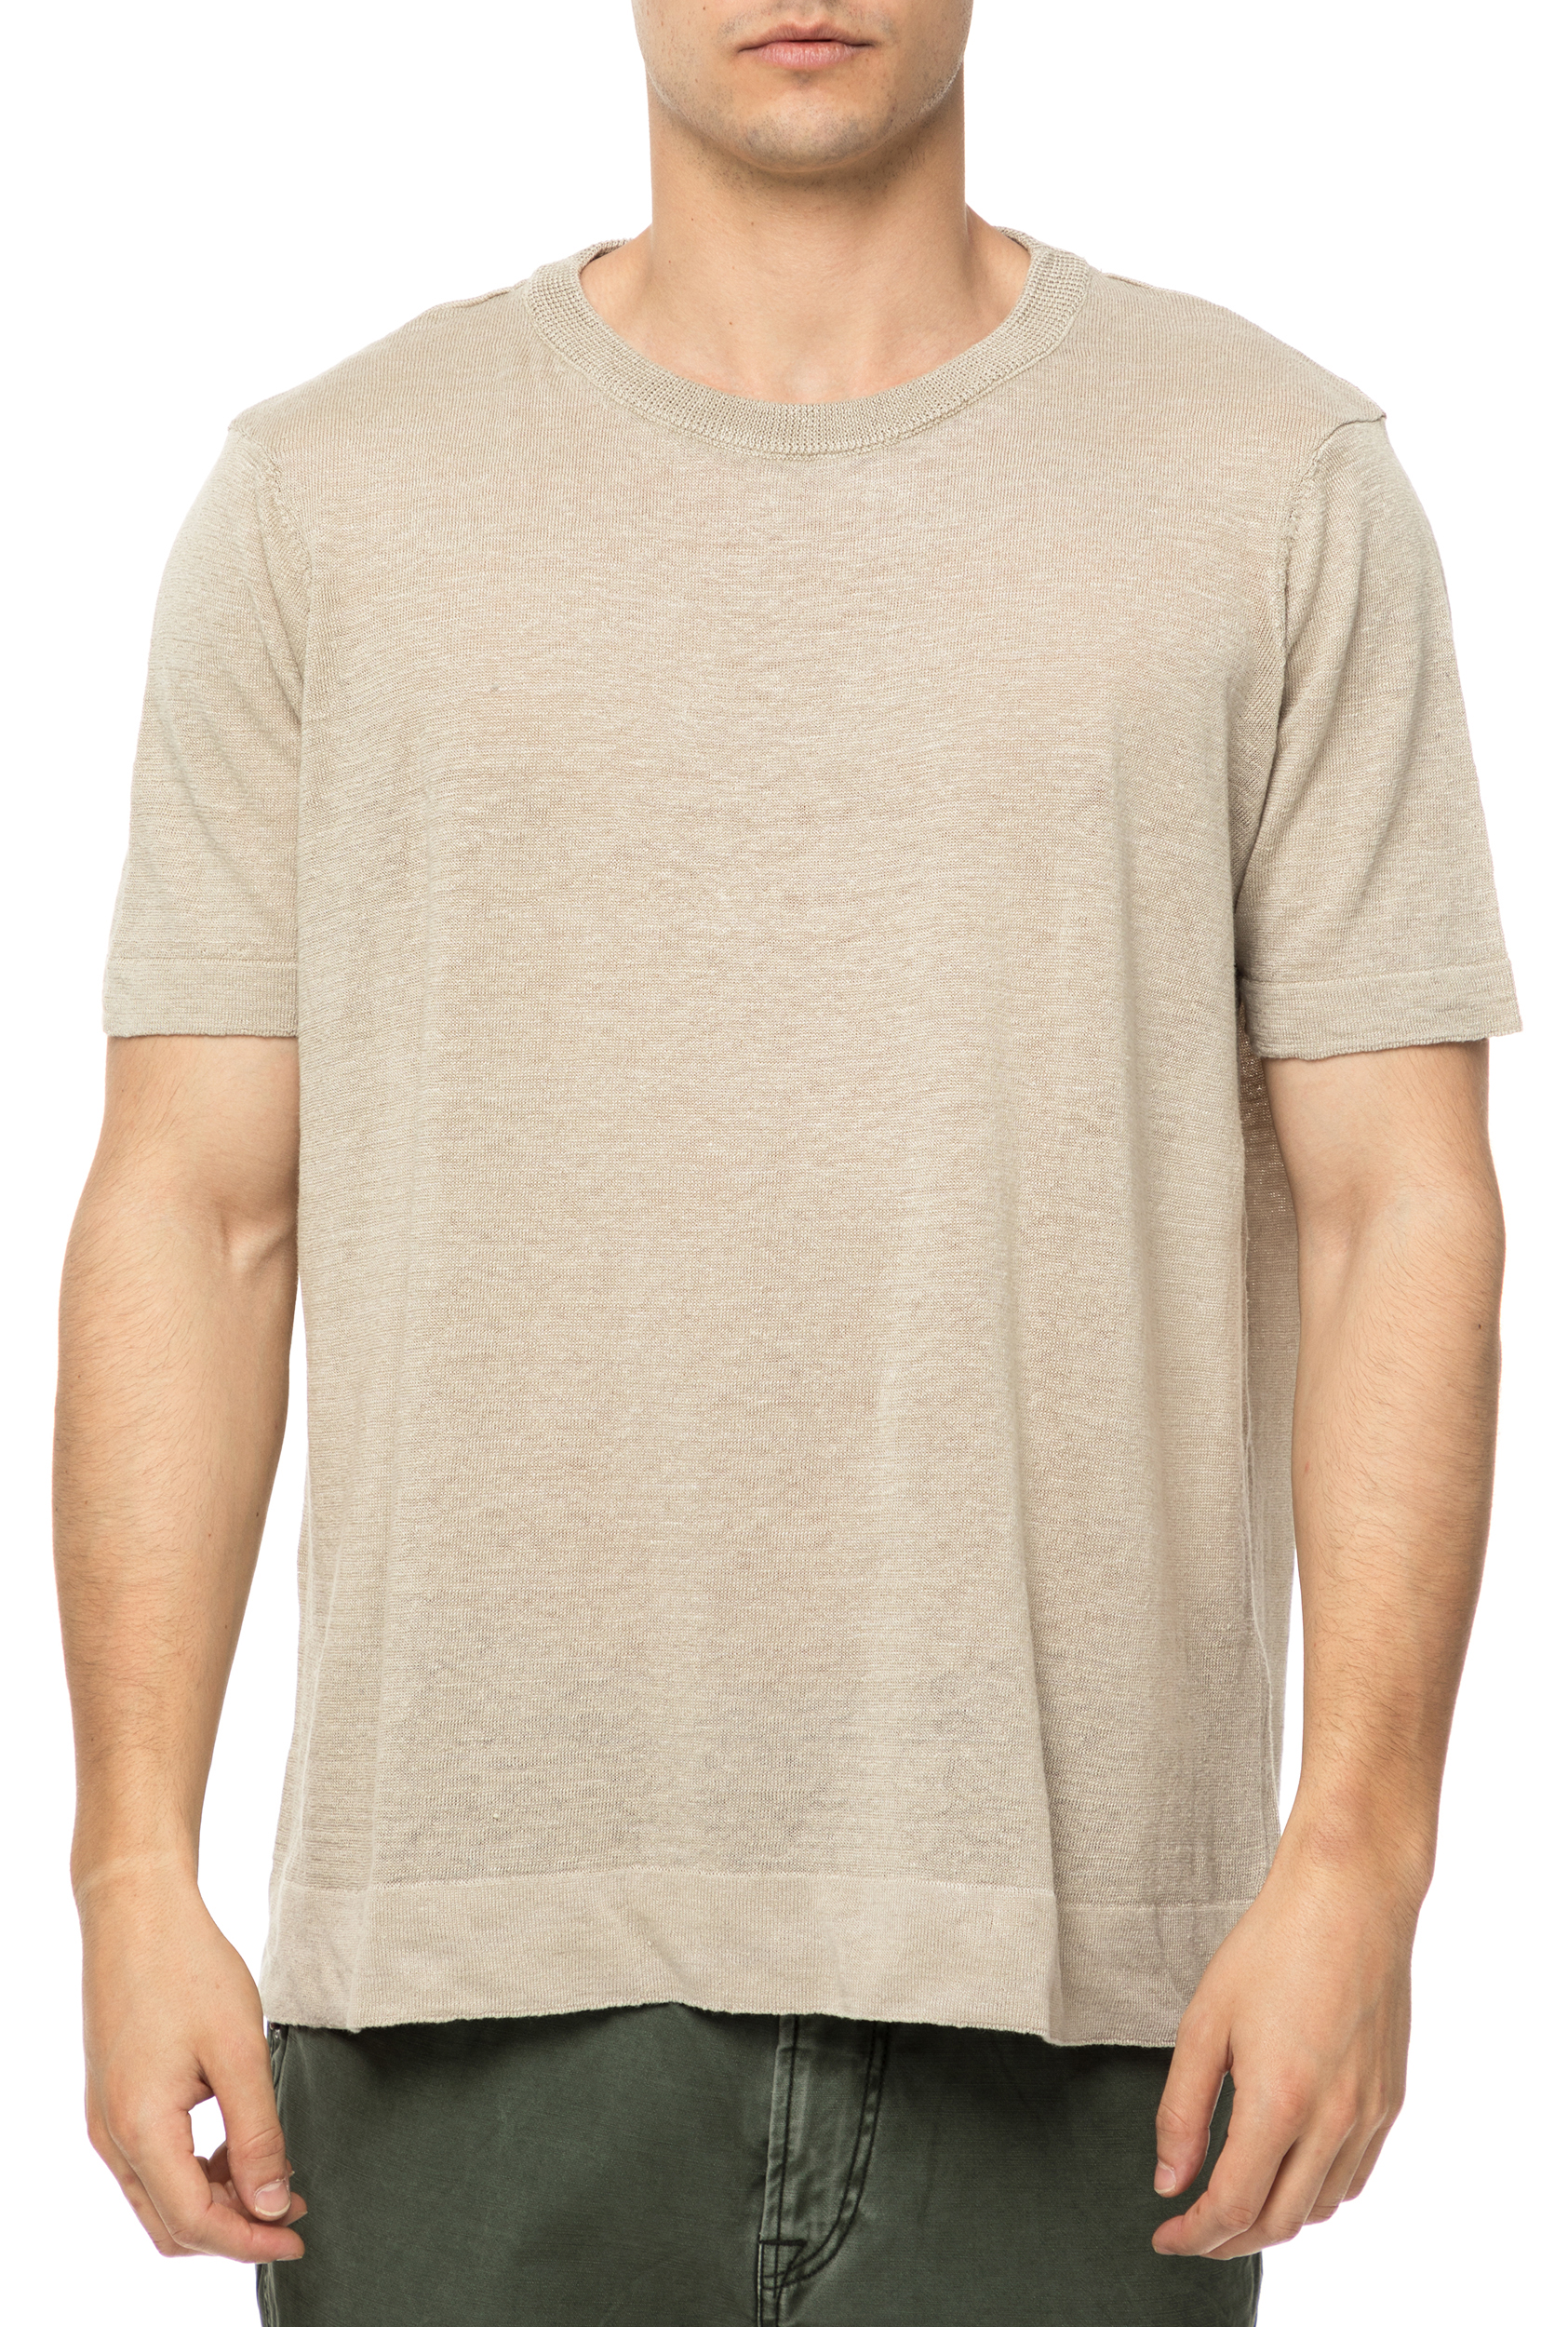 Ανδρικά/Ρούχα/Μπλούζες/Κοντομάνικες AMERICAN VINTAGE - Ανδρική κοντομάνικη μπλούζα AMERICAN VINTAGE μπεζ